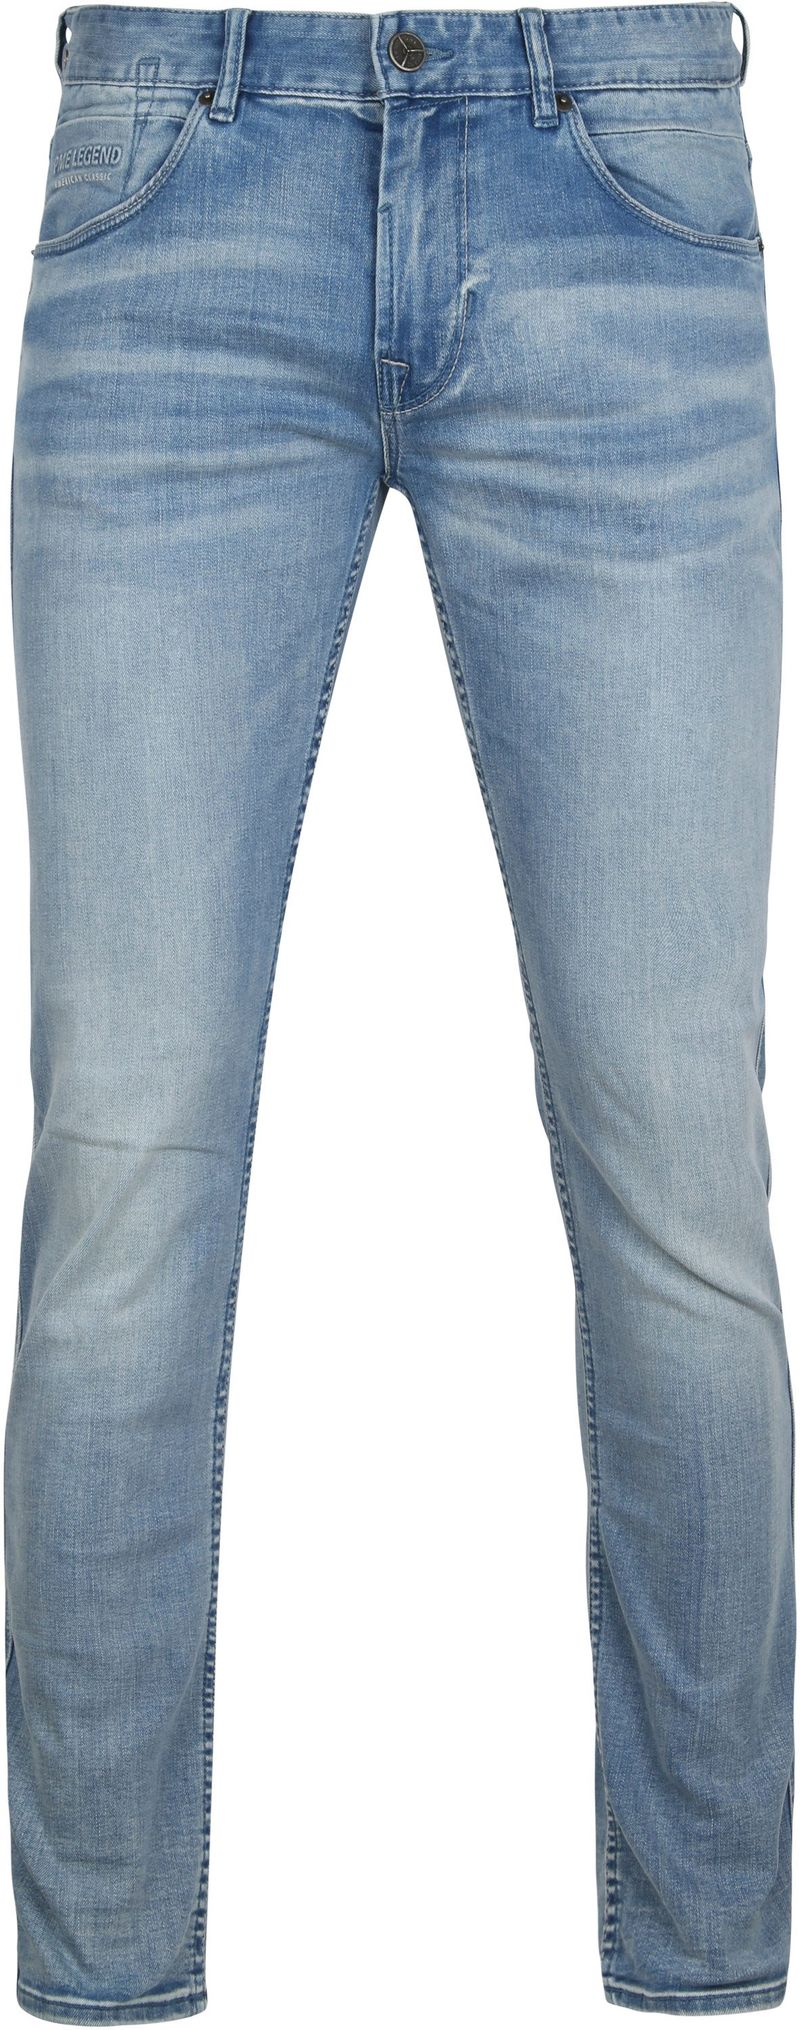 PME Legend Nightflight Jeans Blau - Größe W 32 - L 32 günstig online kaufen